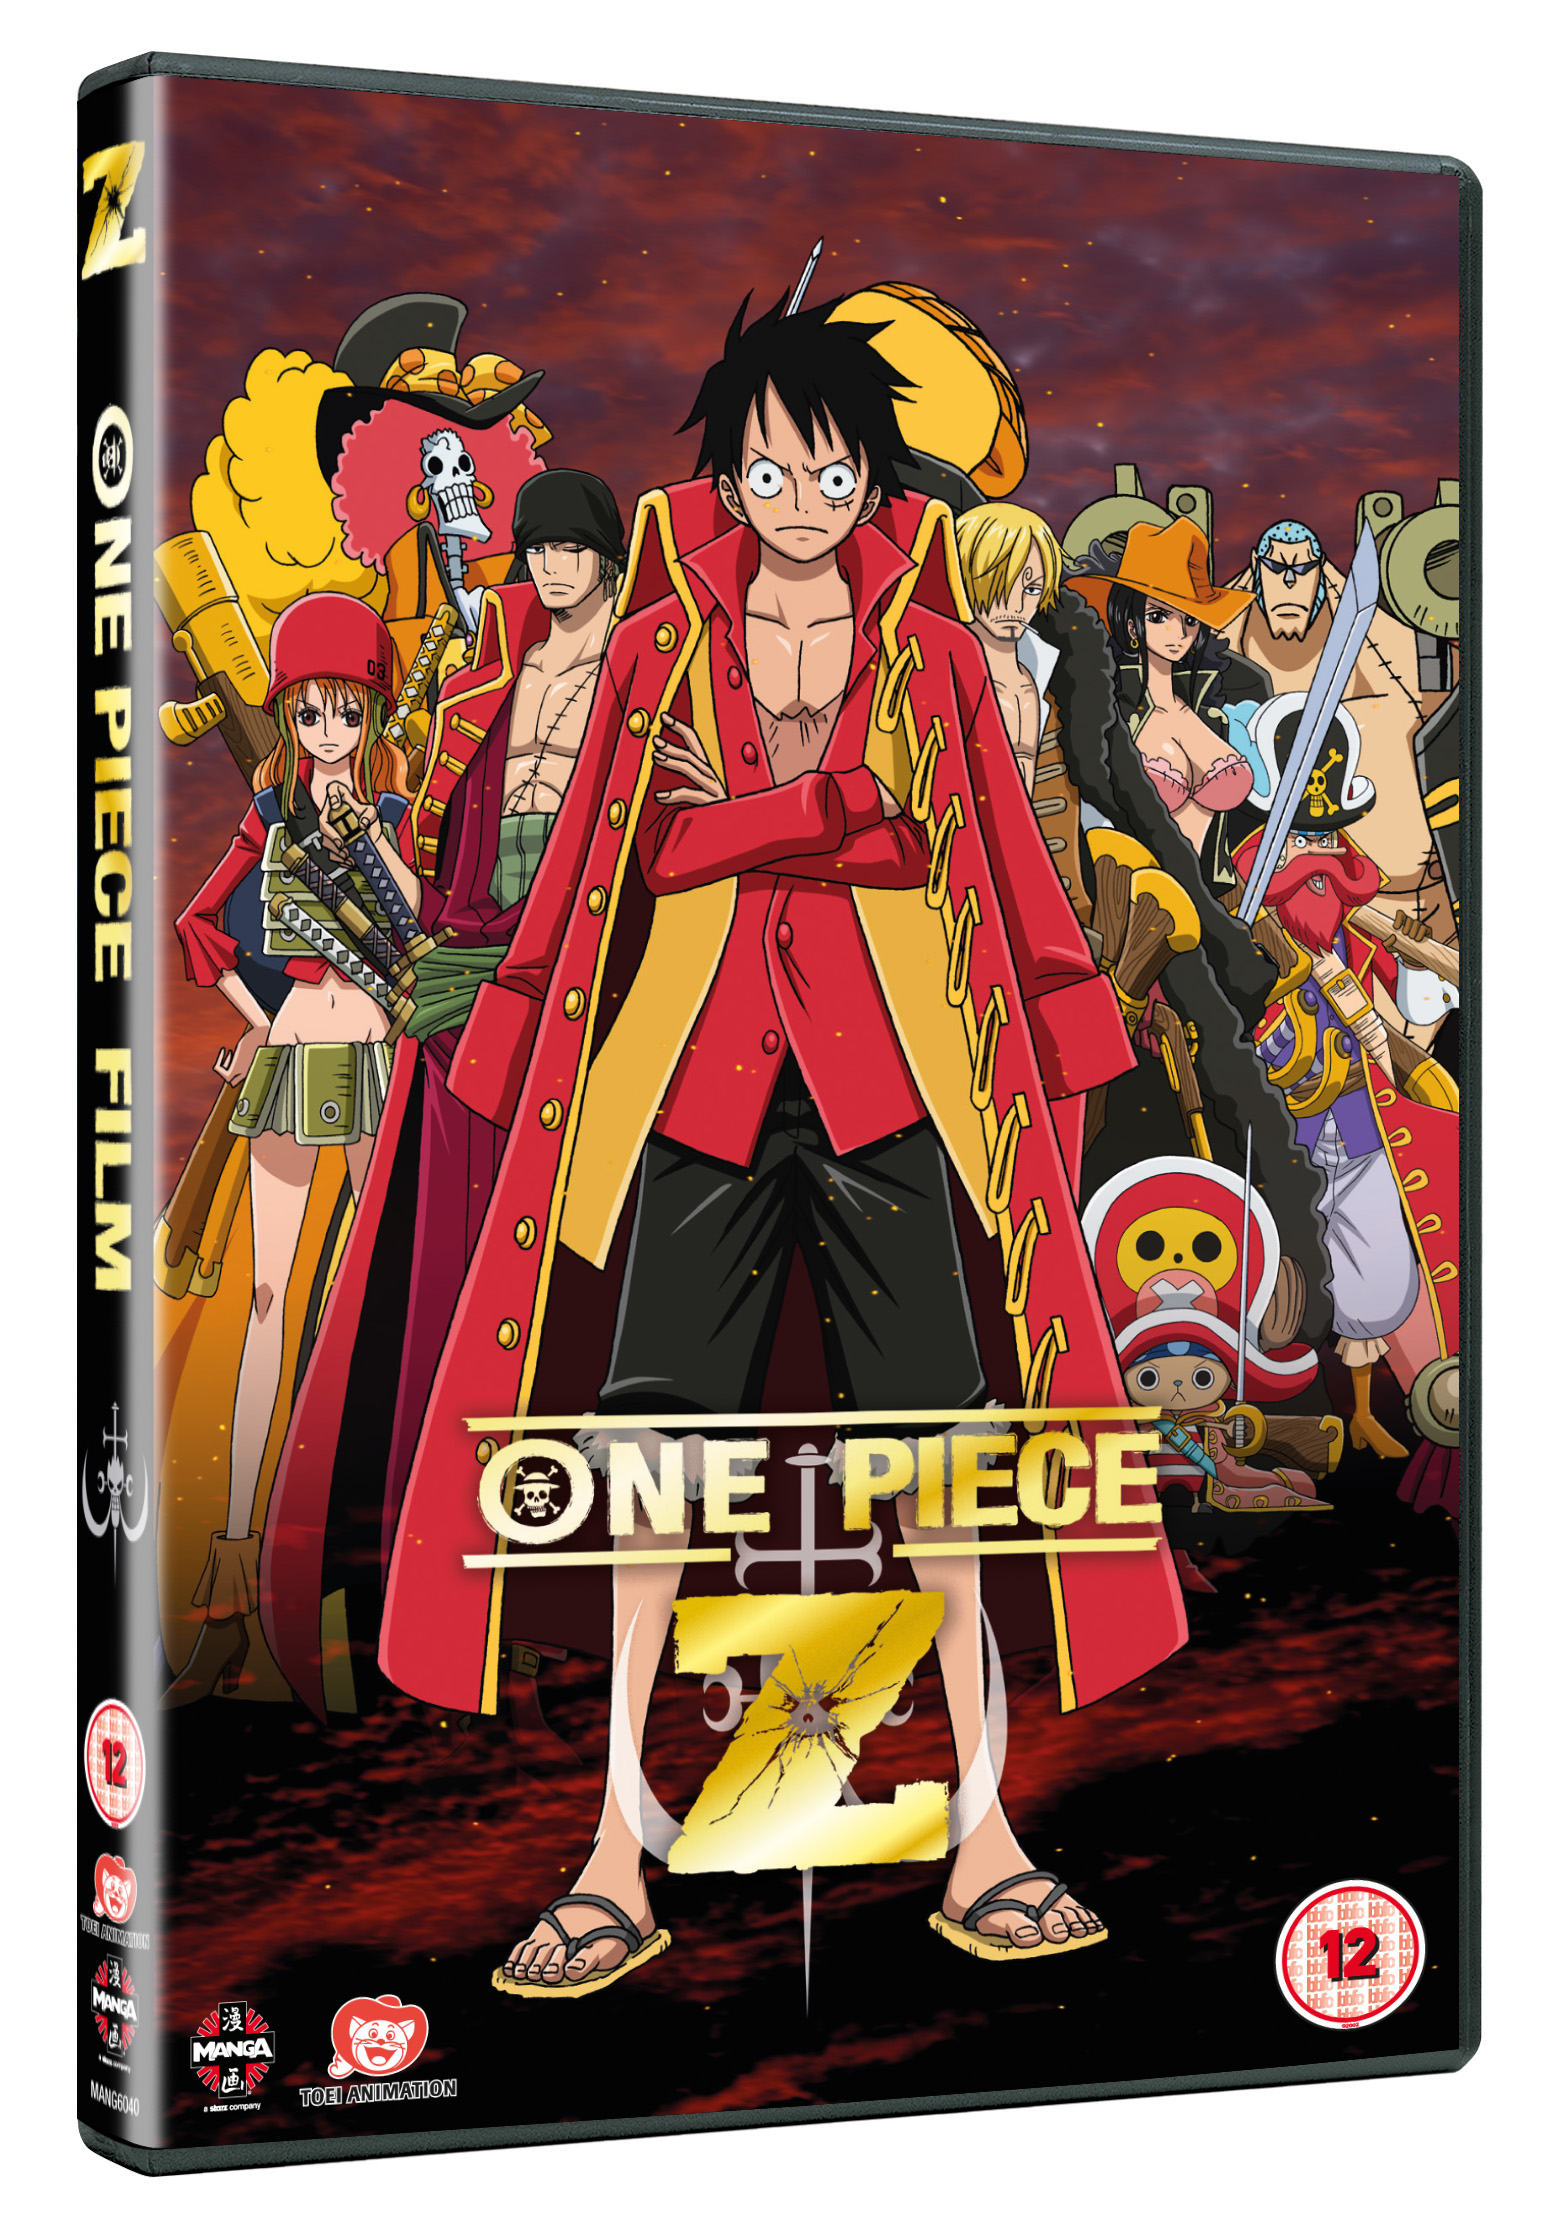 One Piece: Film Z - DVD